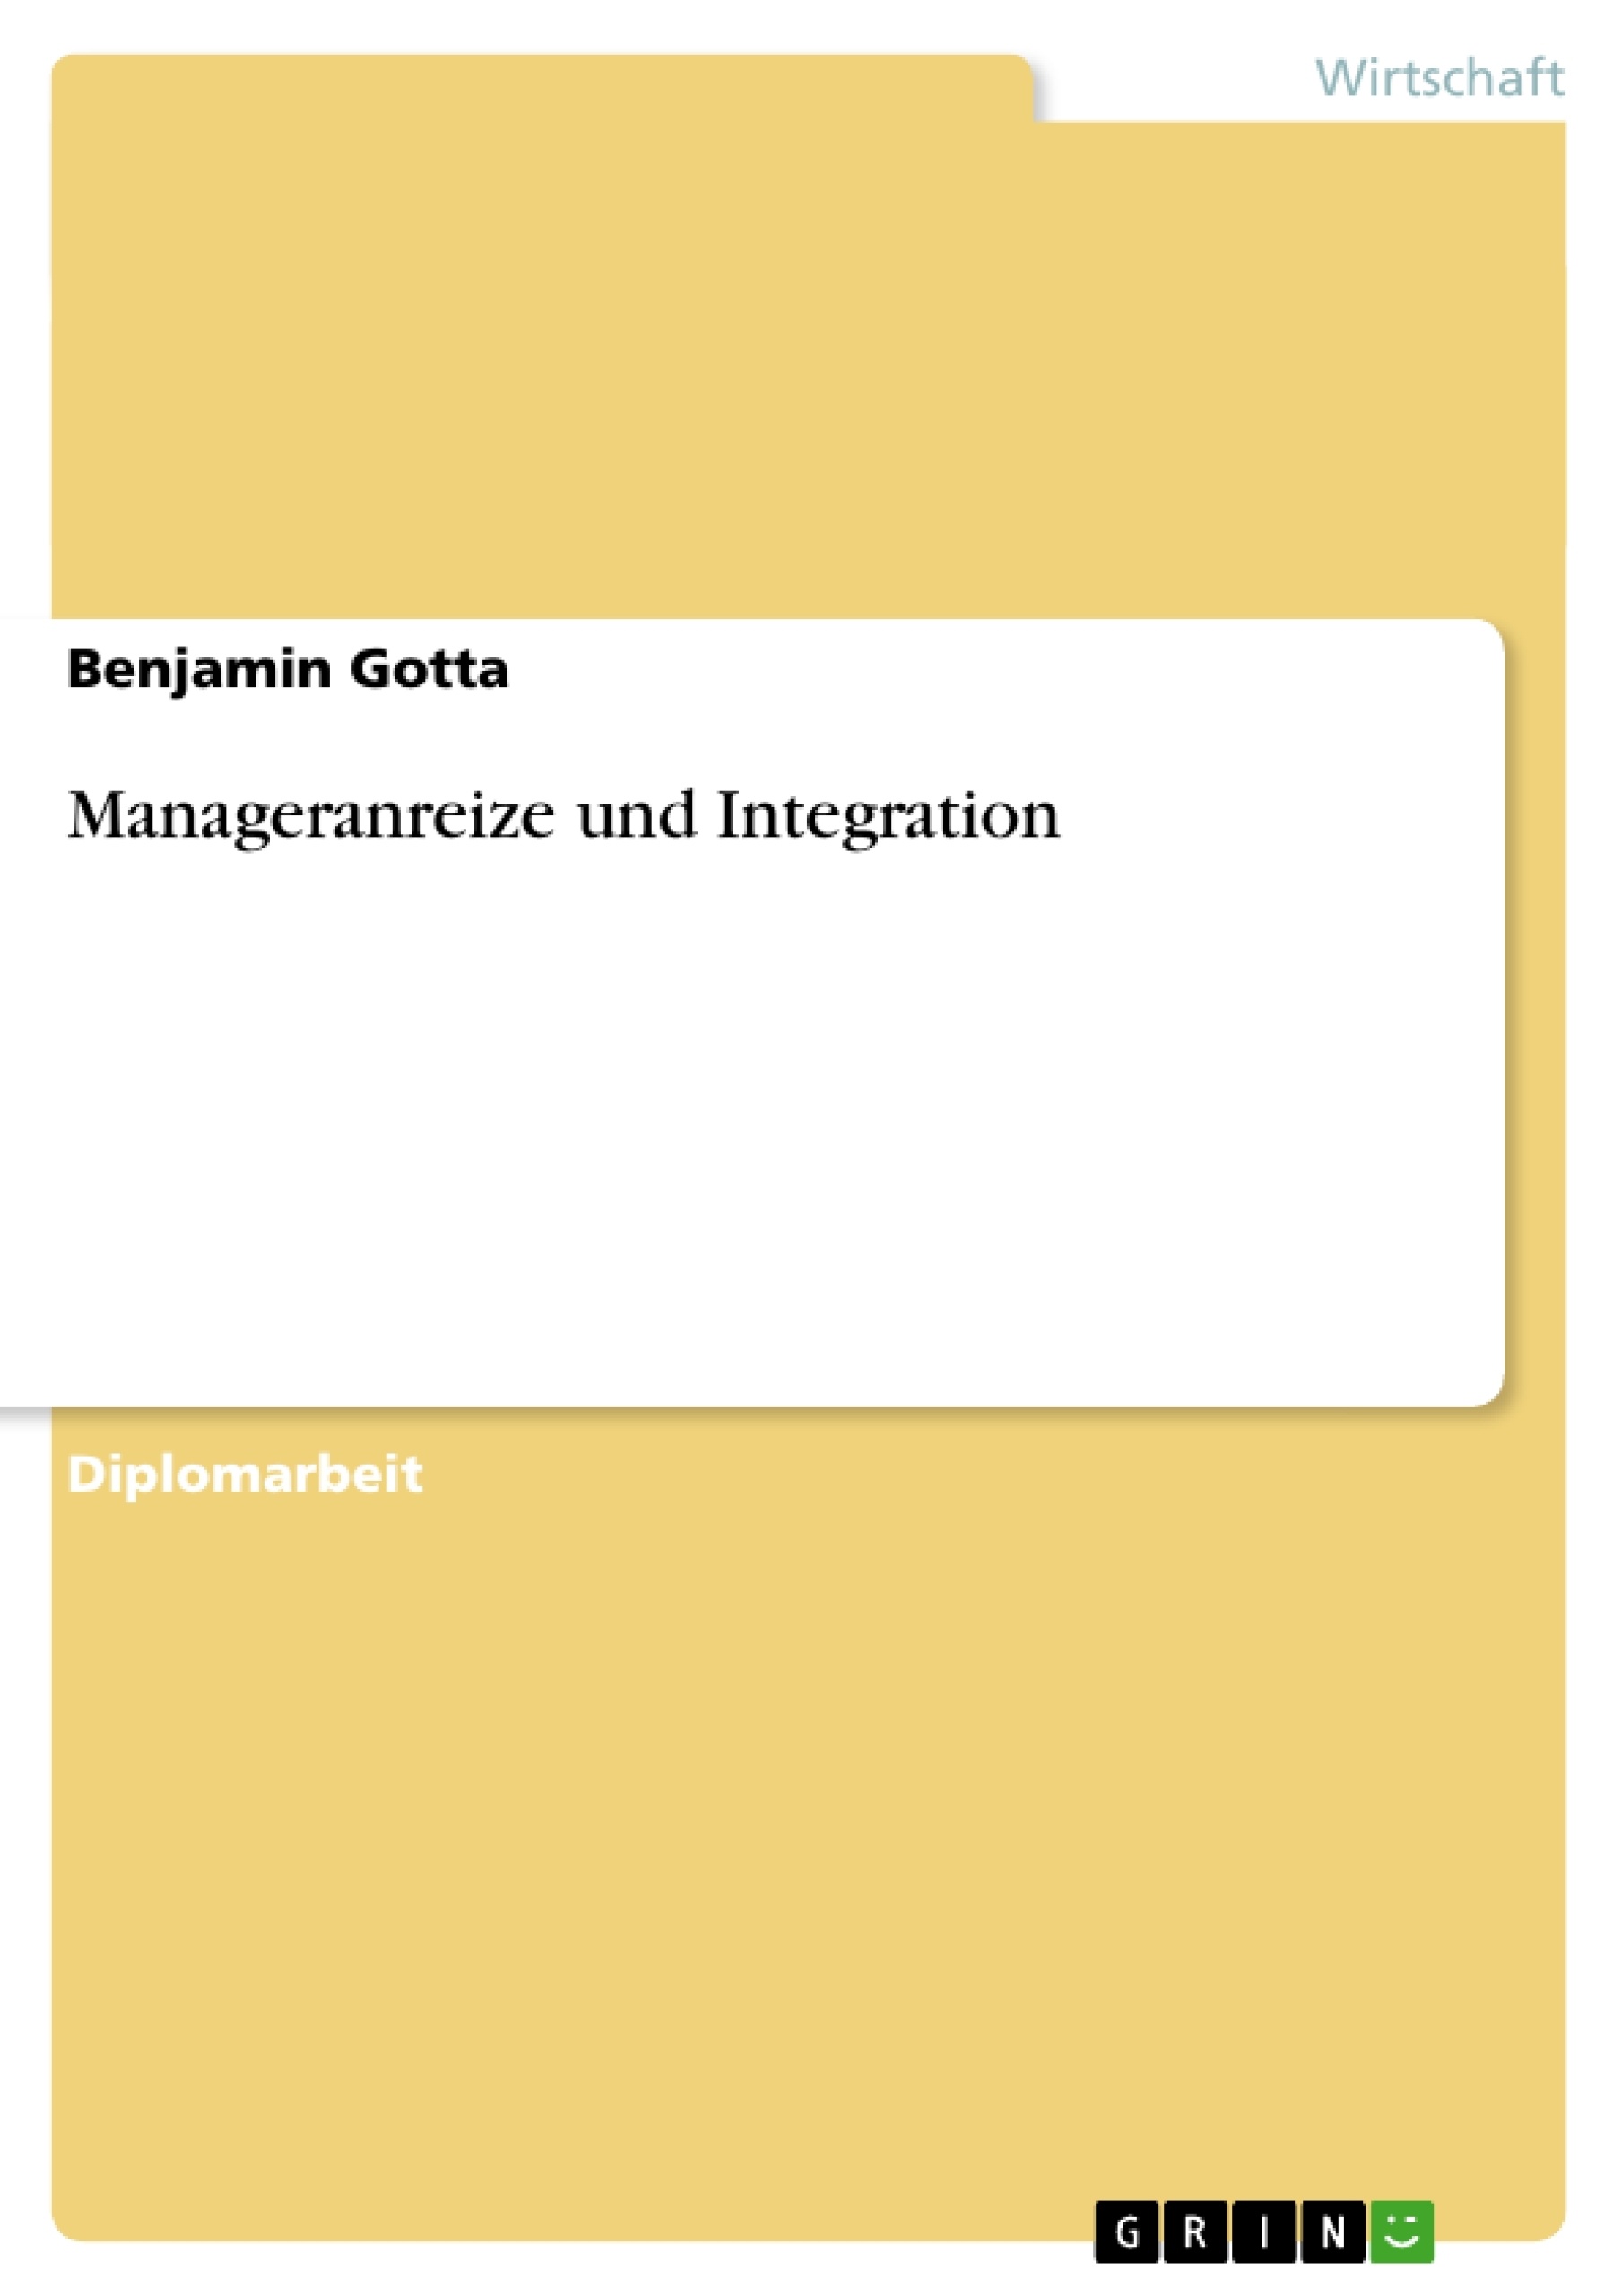 Title: Manageranreize und Integration